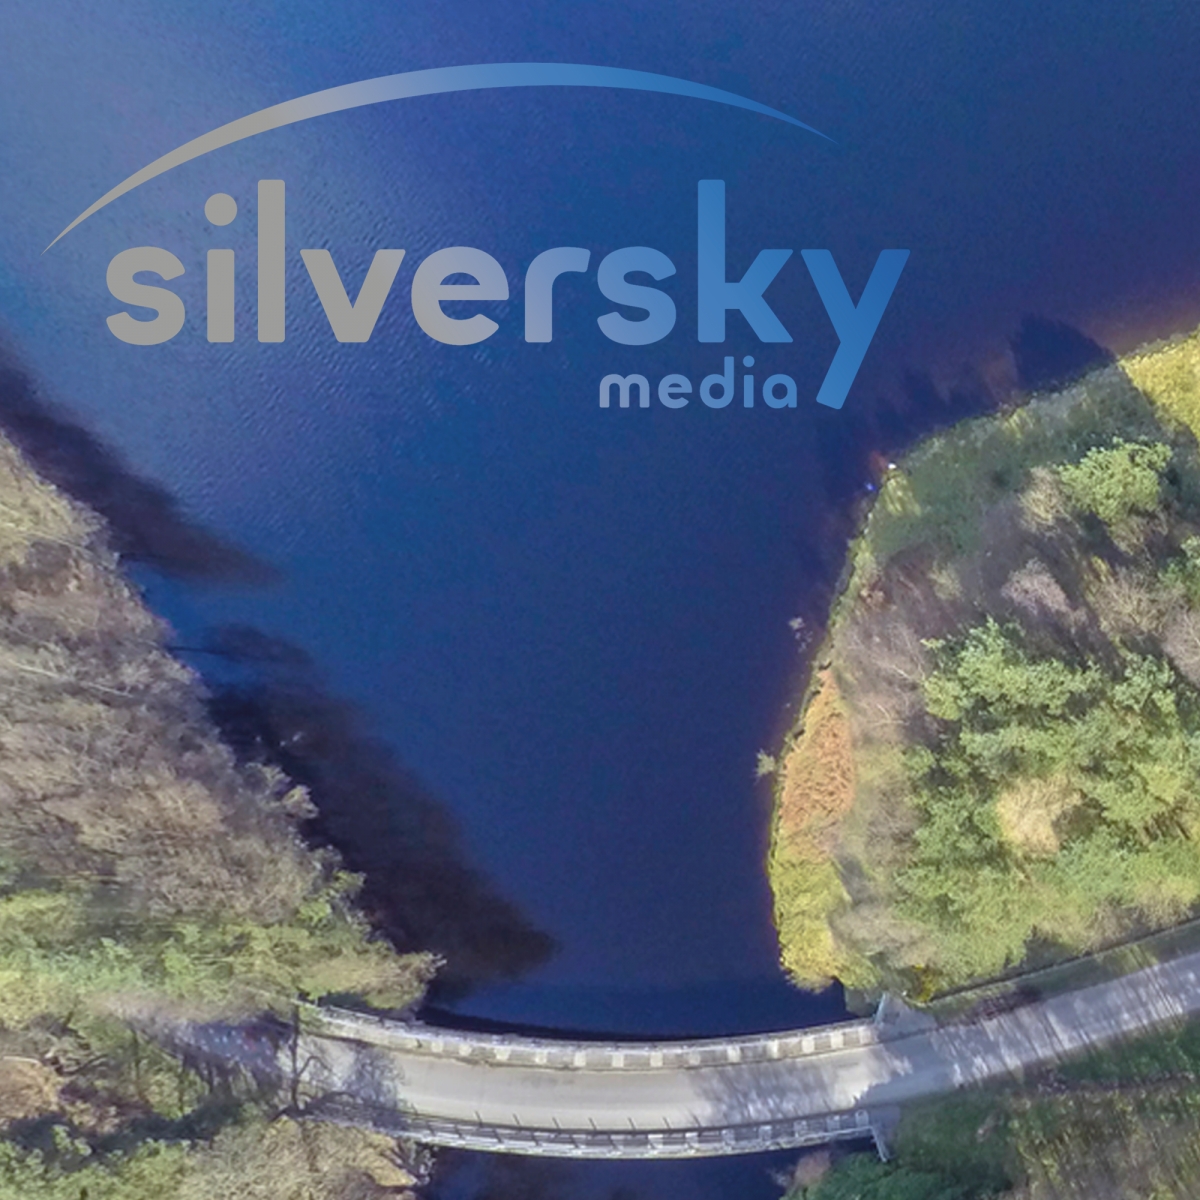 Silversky Media